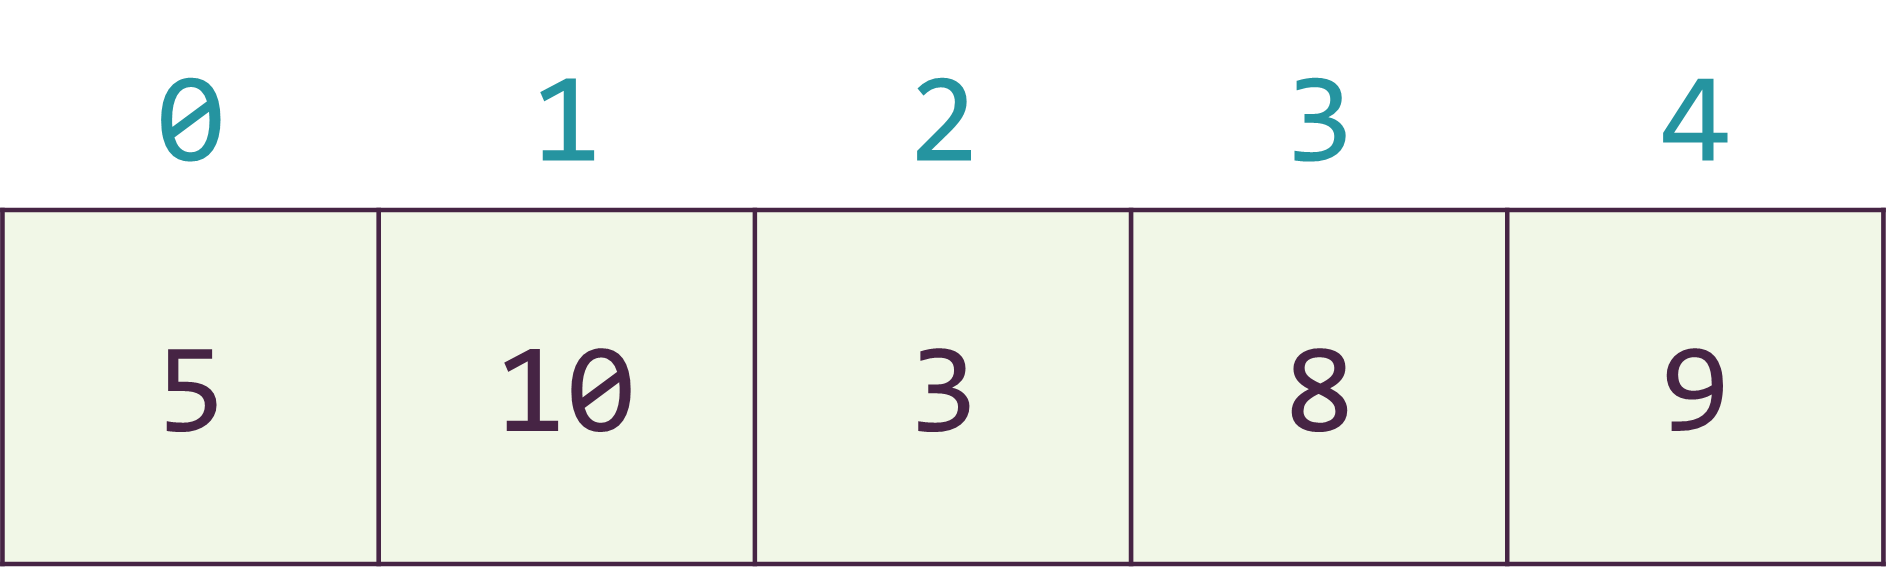 Hình 2. Biểu diễn dãy A dưới dạng mảng một chiều